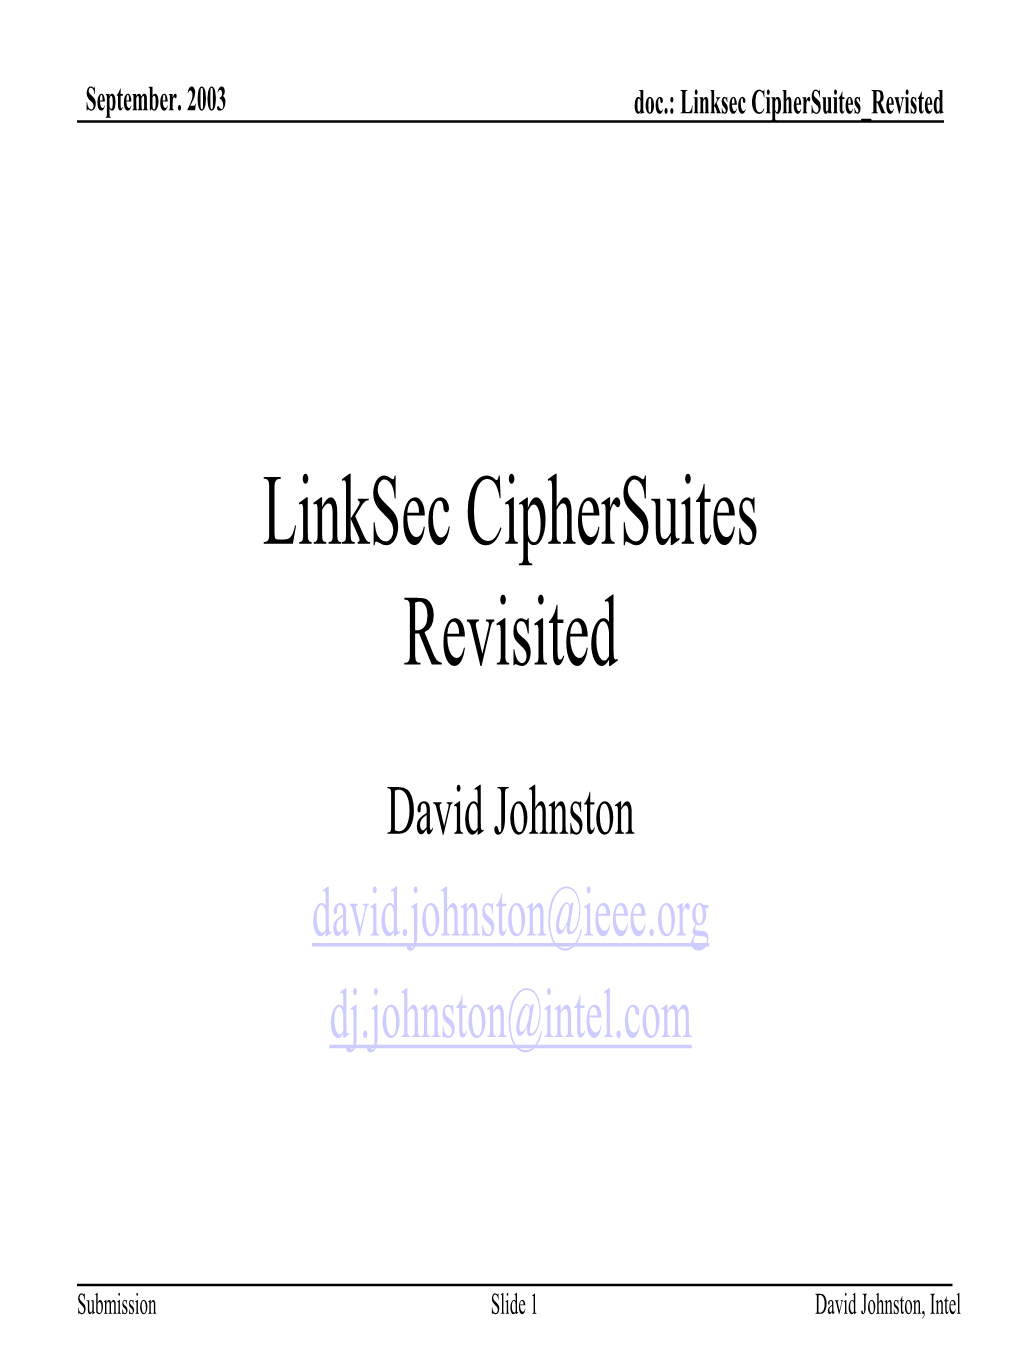 Linksec Ciphersuites Revisited